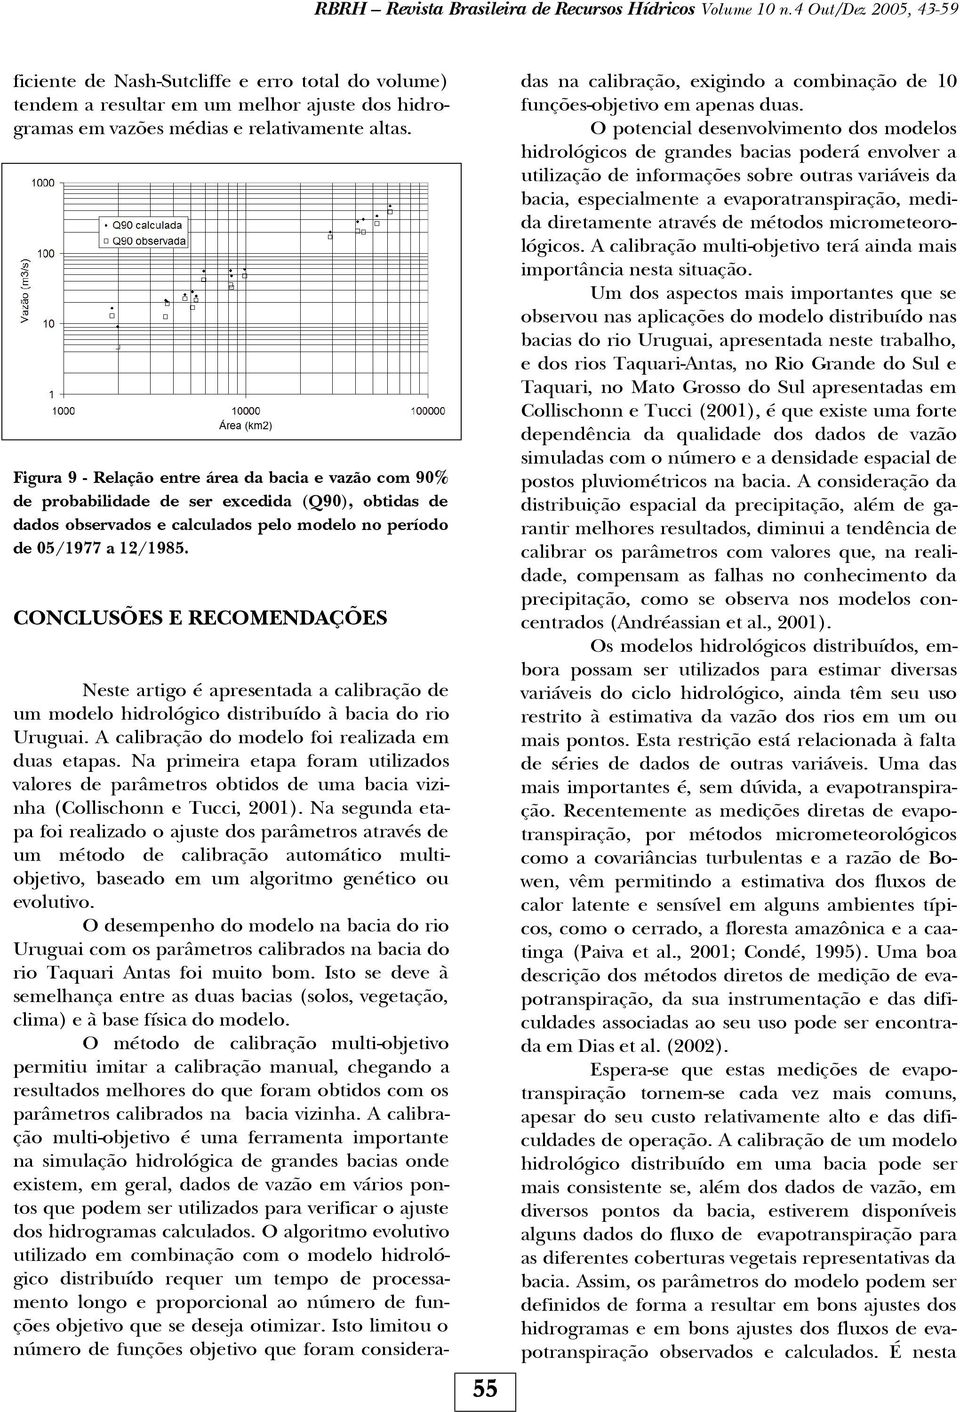 CONCLUSÕES E RECOMENDAÇÕES 55 Neste artigo é apresentada a calibração de um modelo hidrológico distribuído à bacia do rio Uruguai. A calibração do modelo foi realizada em duas etapas.